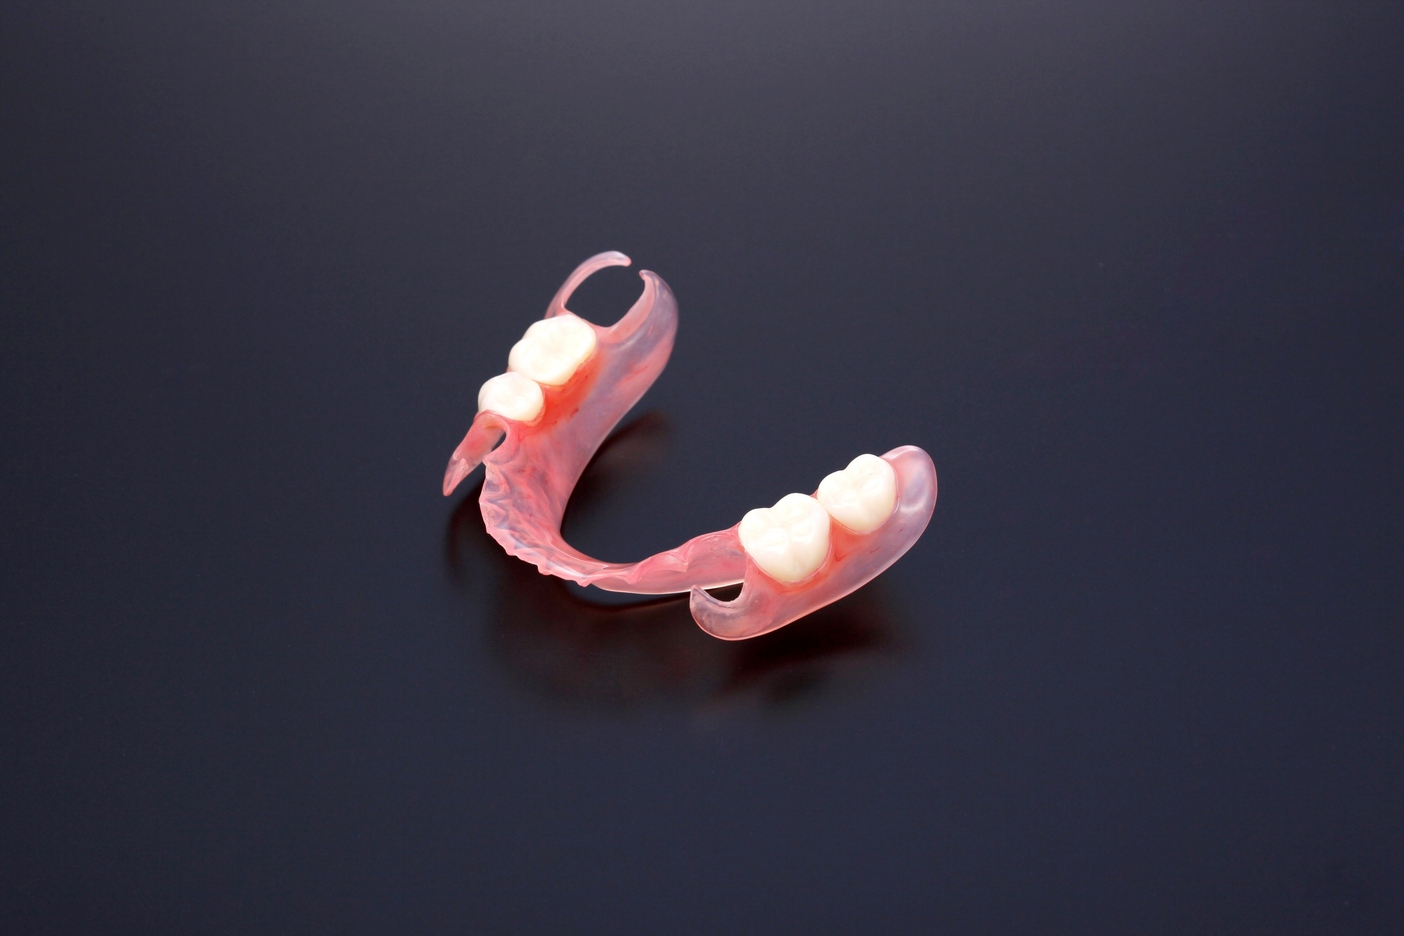 バルプラスト義歯